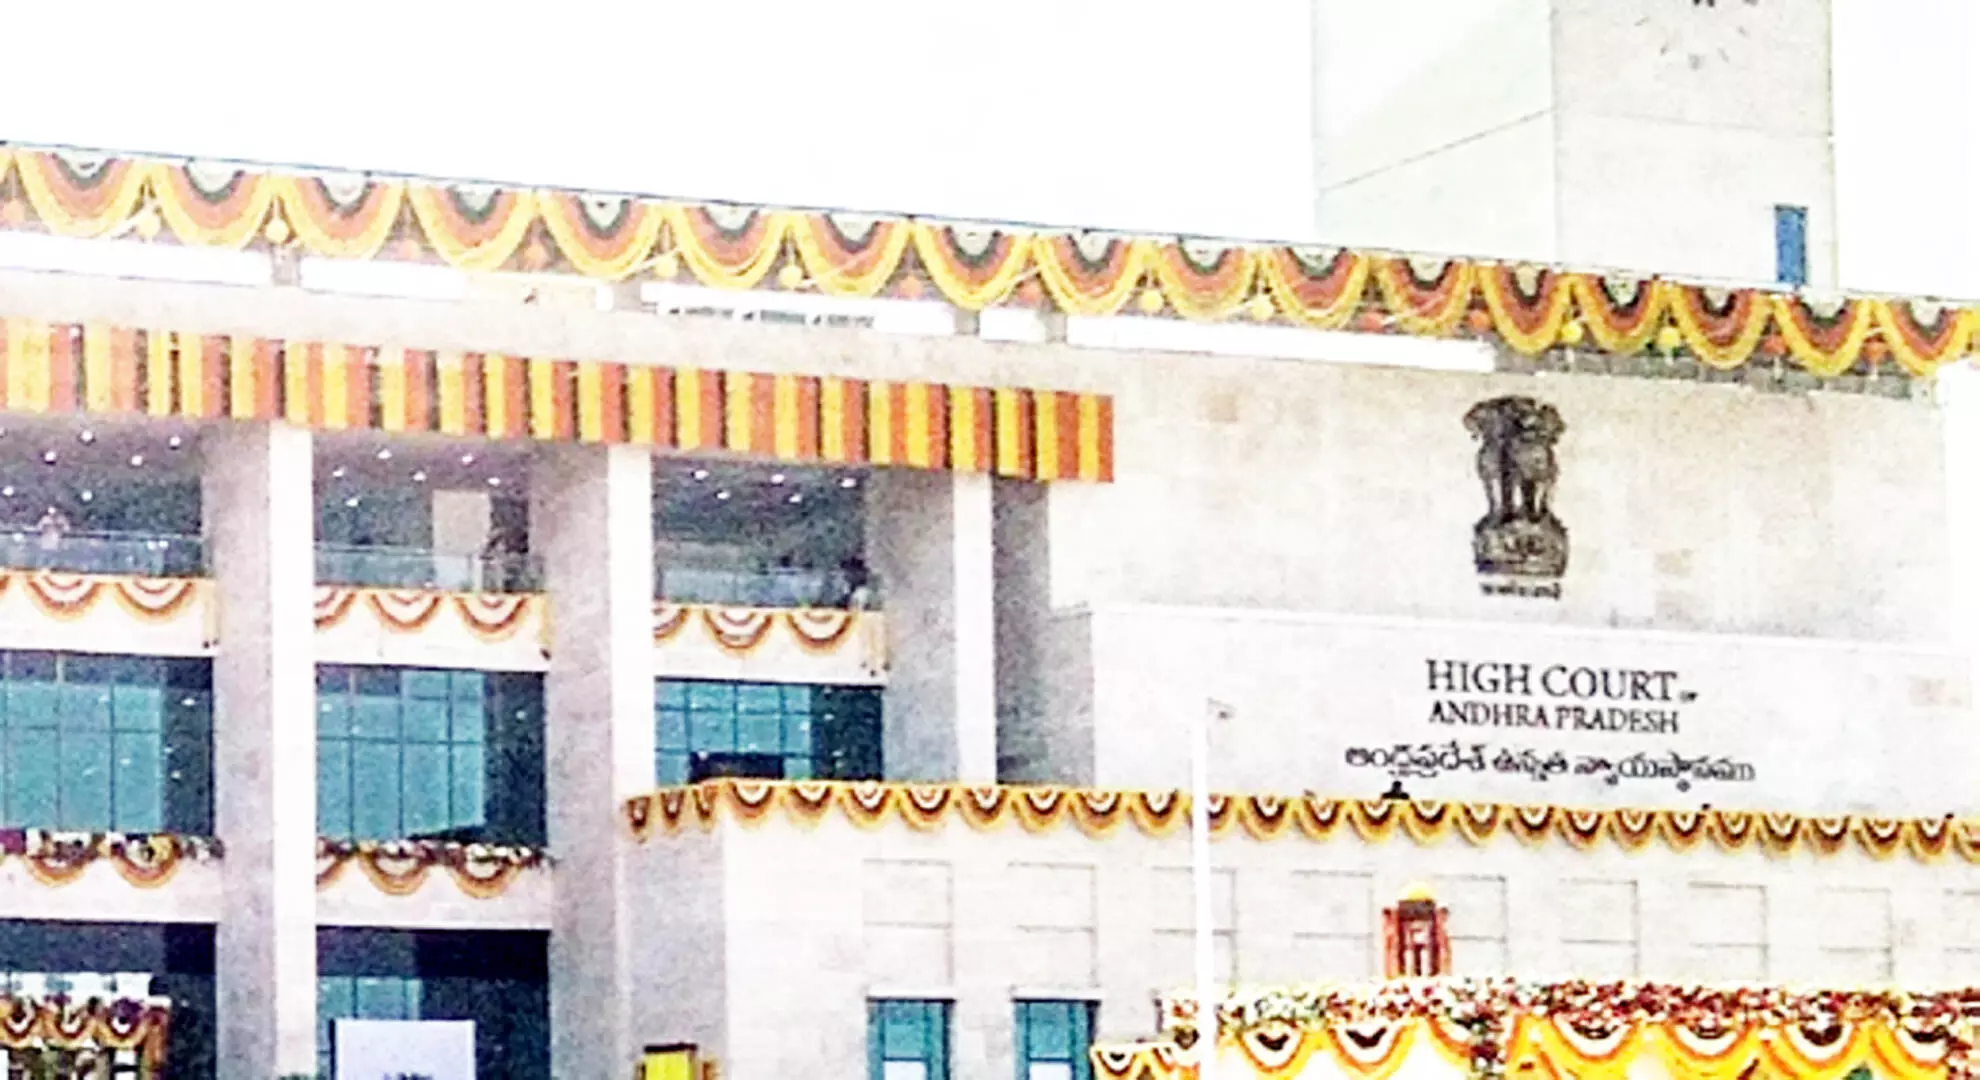 आंध्र प्रदेश उच्च न्यायालय ने सरकारी कॉलेजों में गैर-शिक्षण कर्मचारियों को प्रिंसिपल के पद पर पदोन्नत करने की आलोचना की